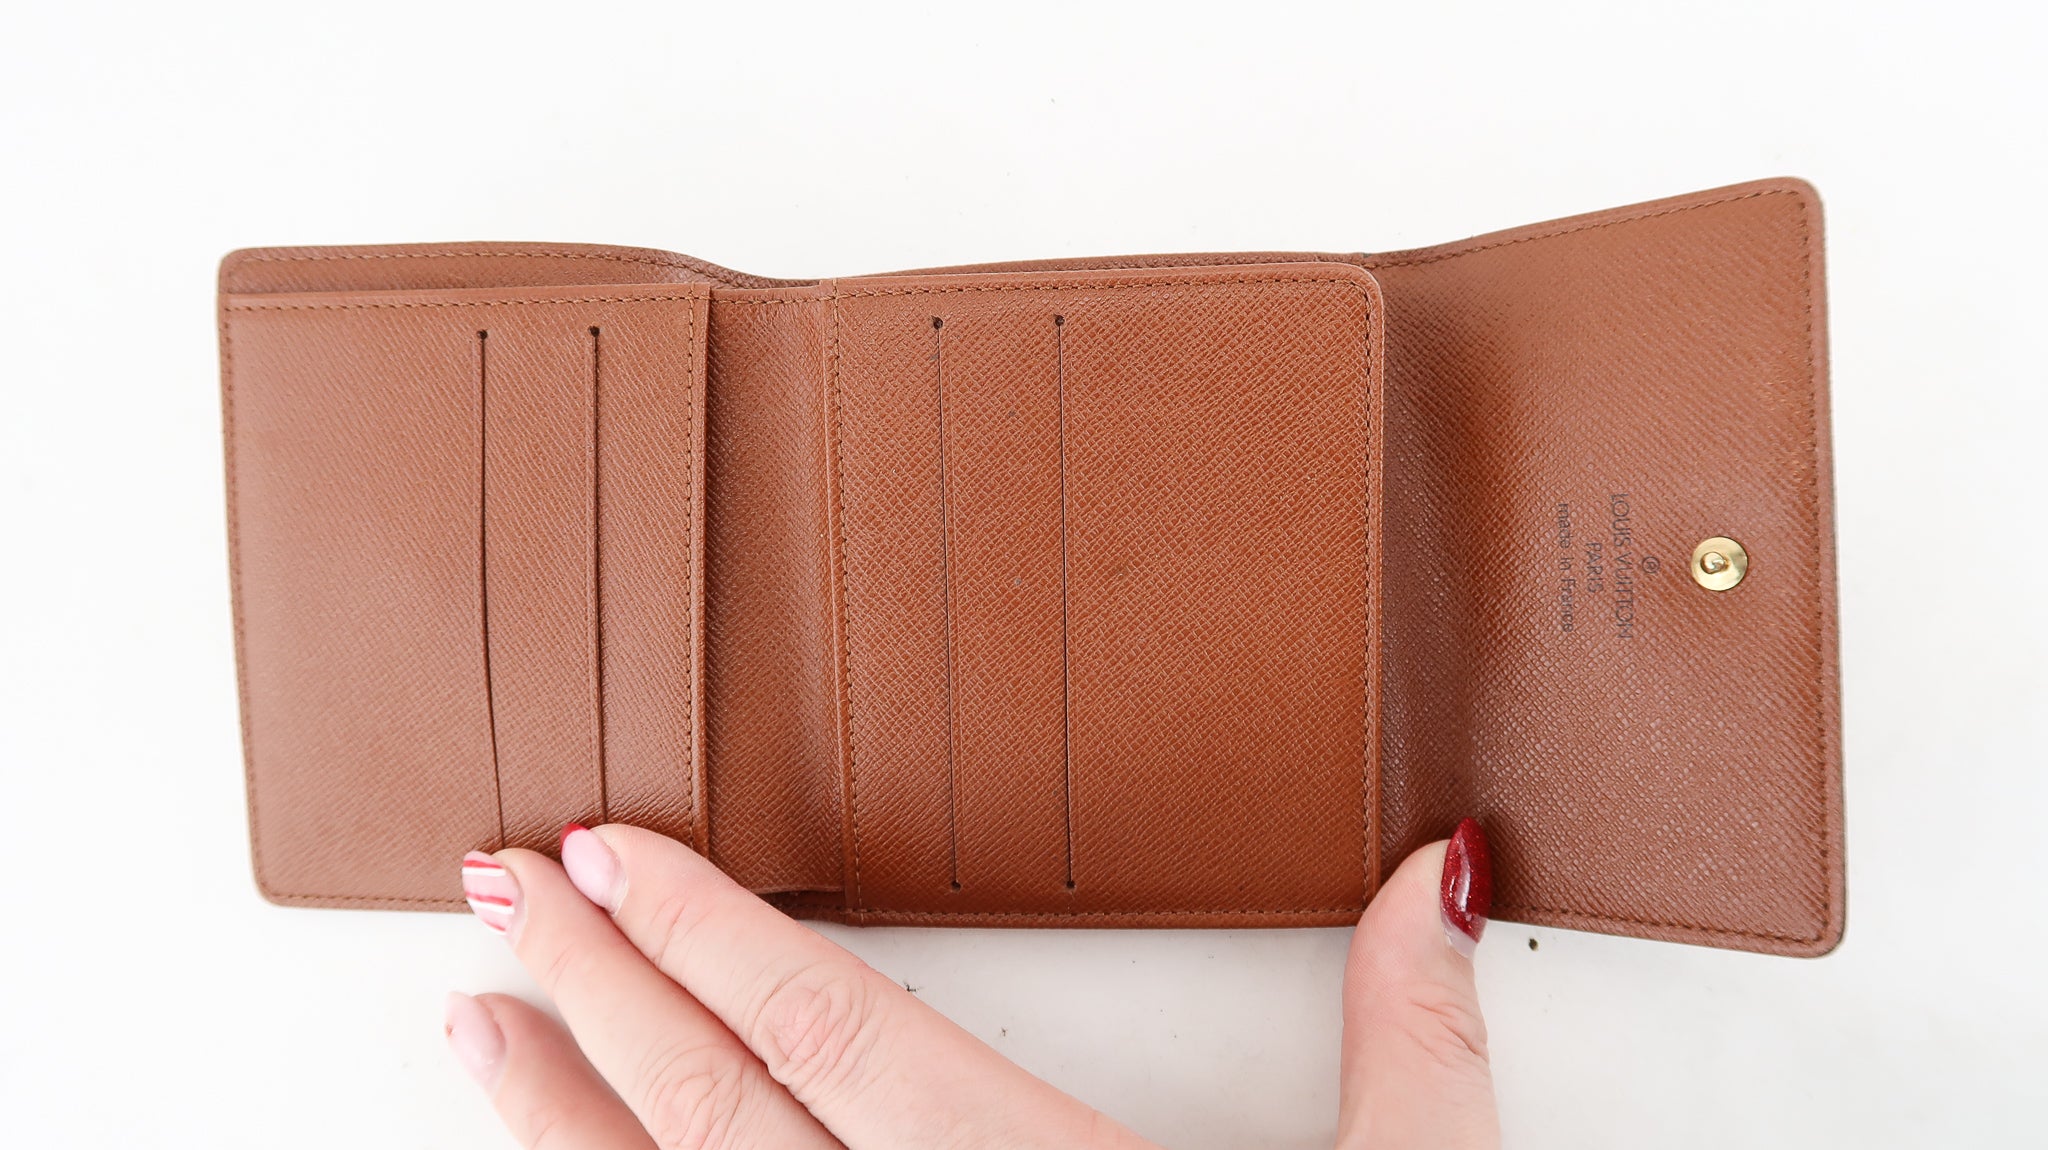 Louis Vuitton-Monogram Elise Compact Wallet